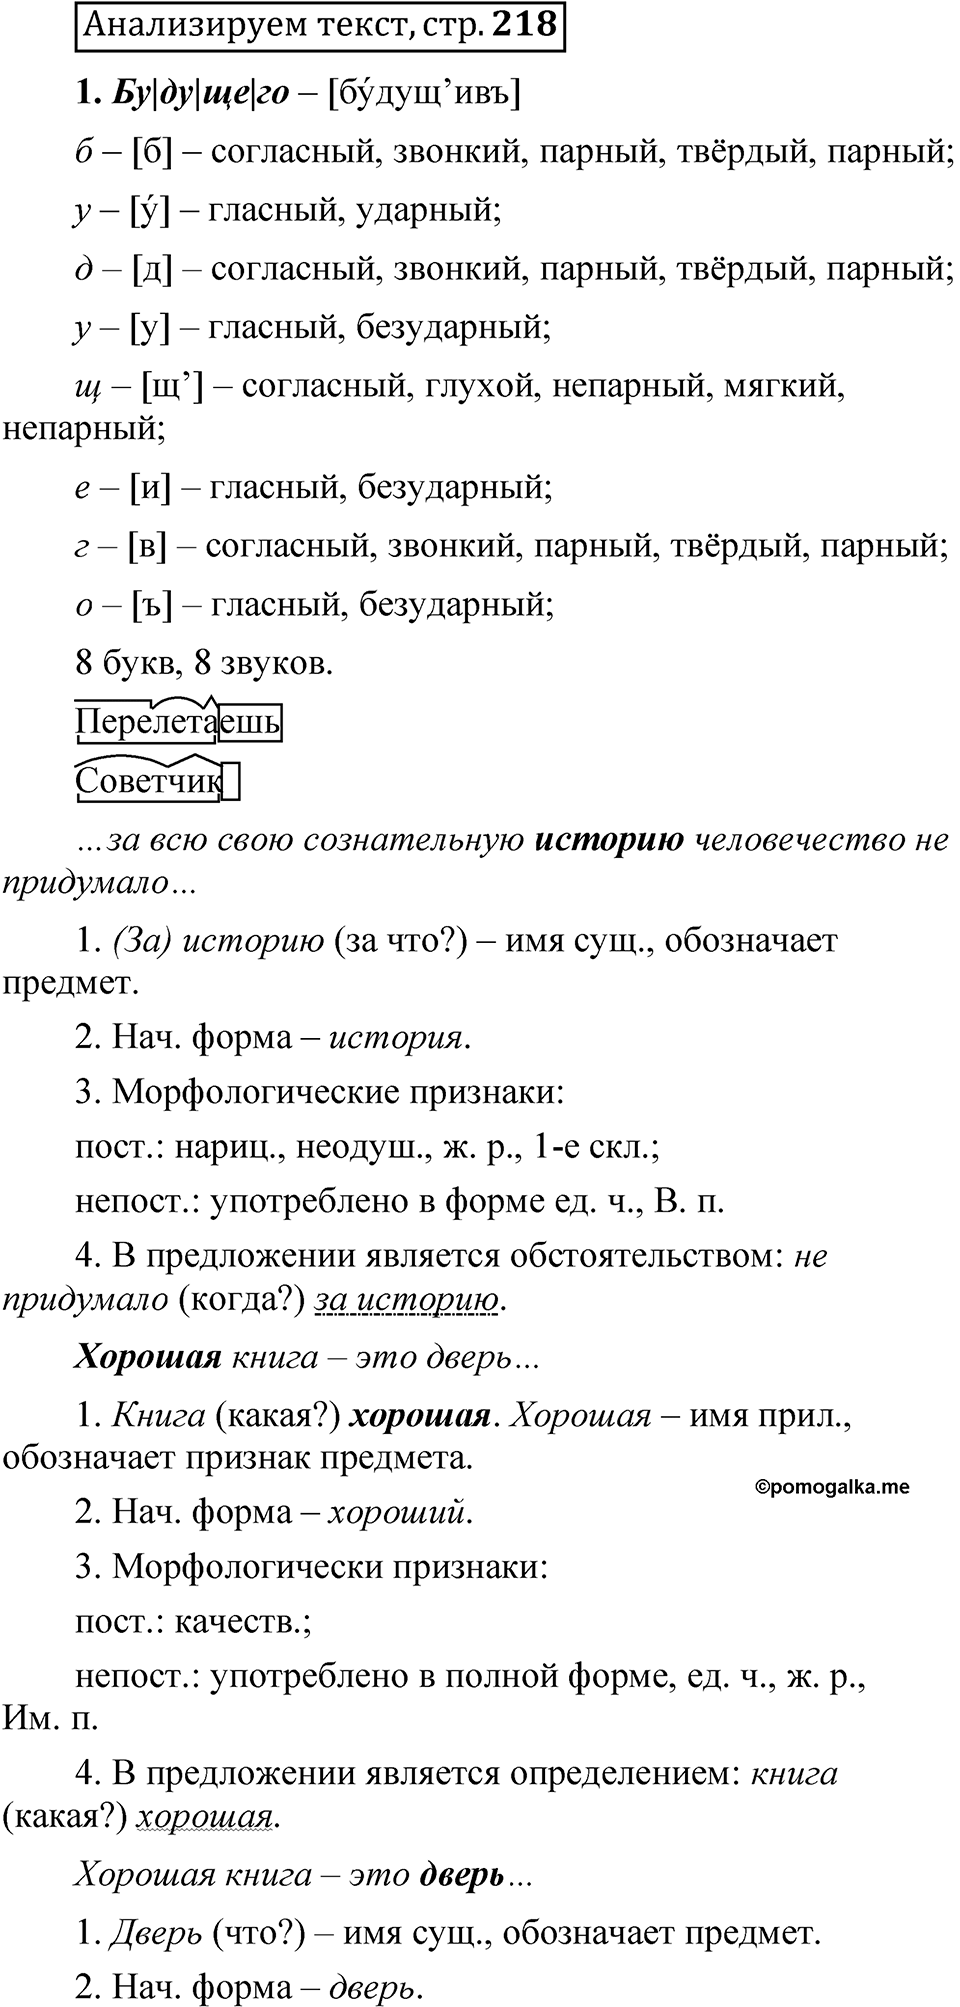 страница 218 Анализируем текст русский язык 5 класс Быстрова, Кибирева 2 часть 2021 год